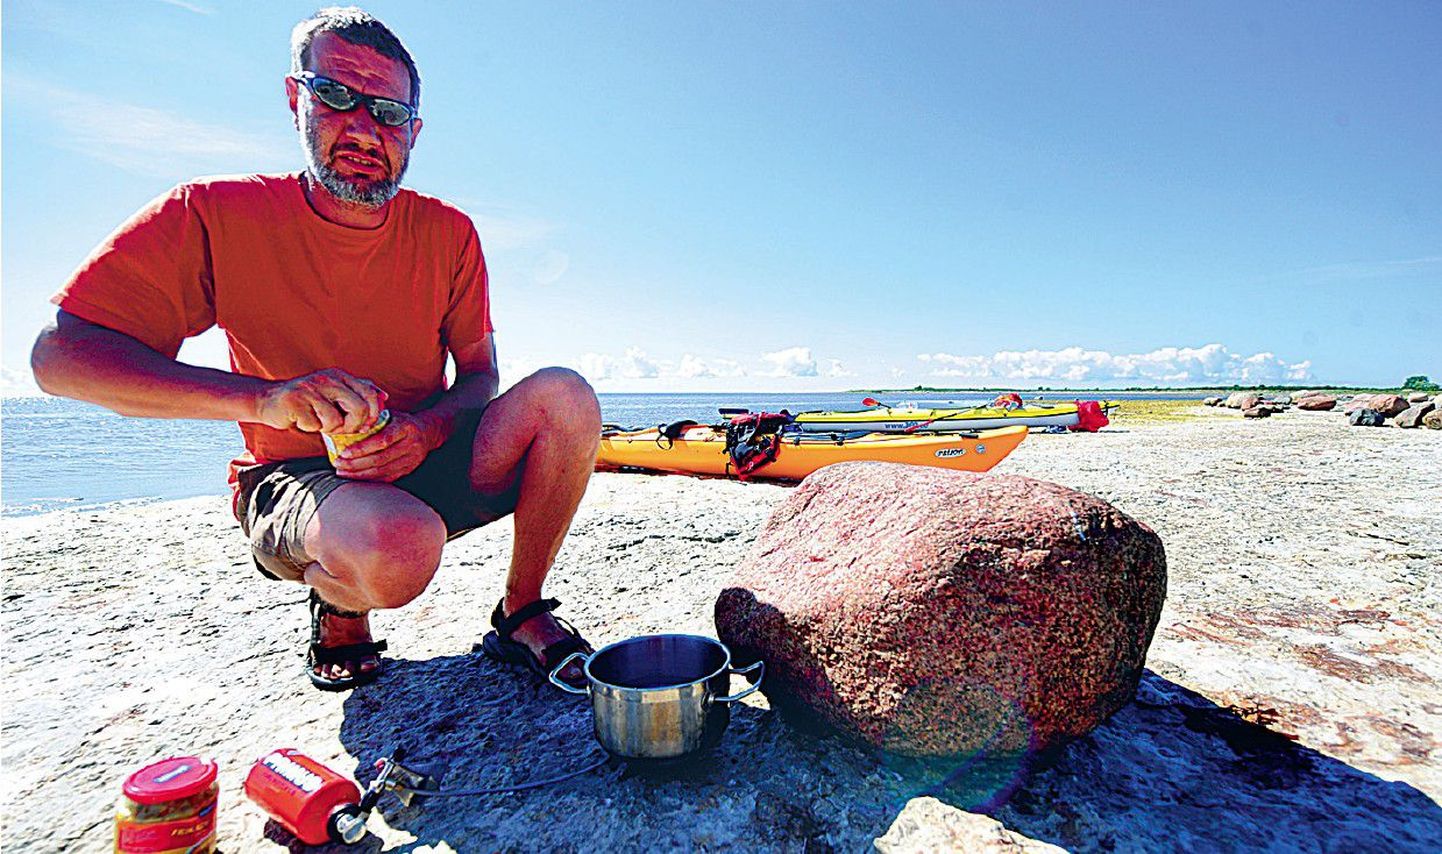 Postimehe viis ajaloolisse paika suvel giidina töötav hülgeuurija Ivar Jüssi, kes valmistub kivisel mererannal lõunasööki keetma.